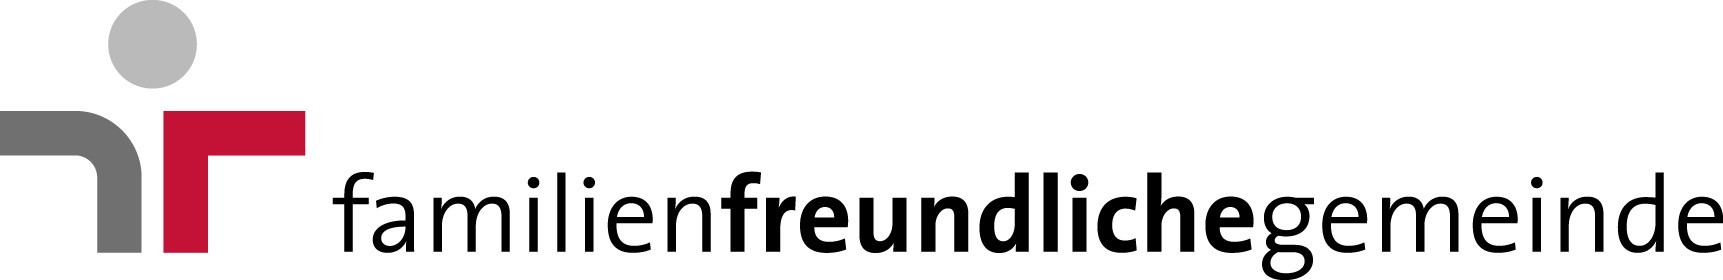 Logo 6.1_familien_freundliche_gemeinde_4C.jpg